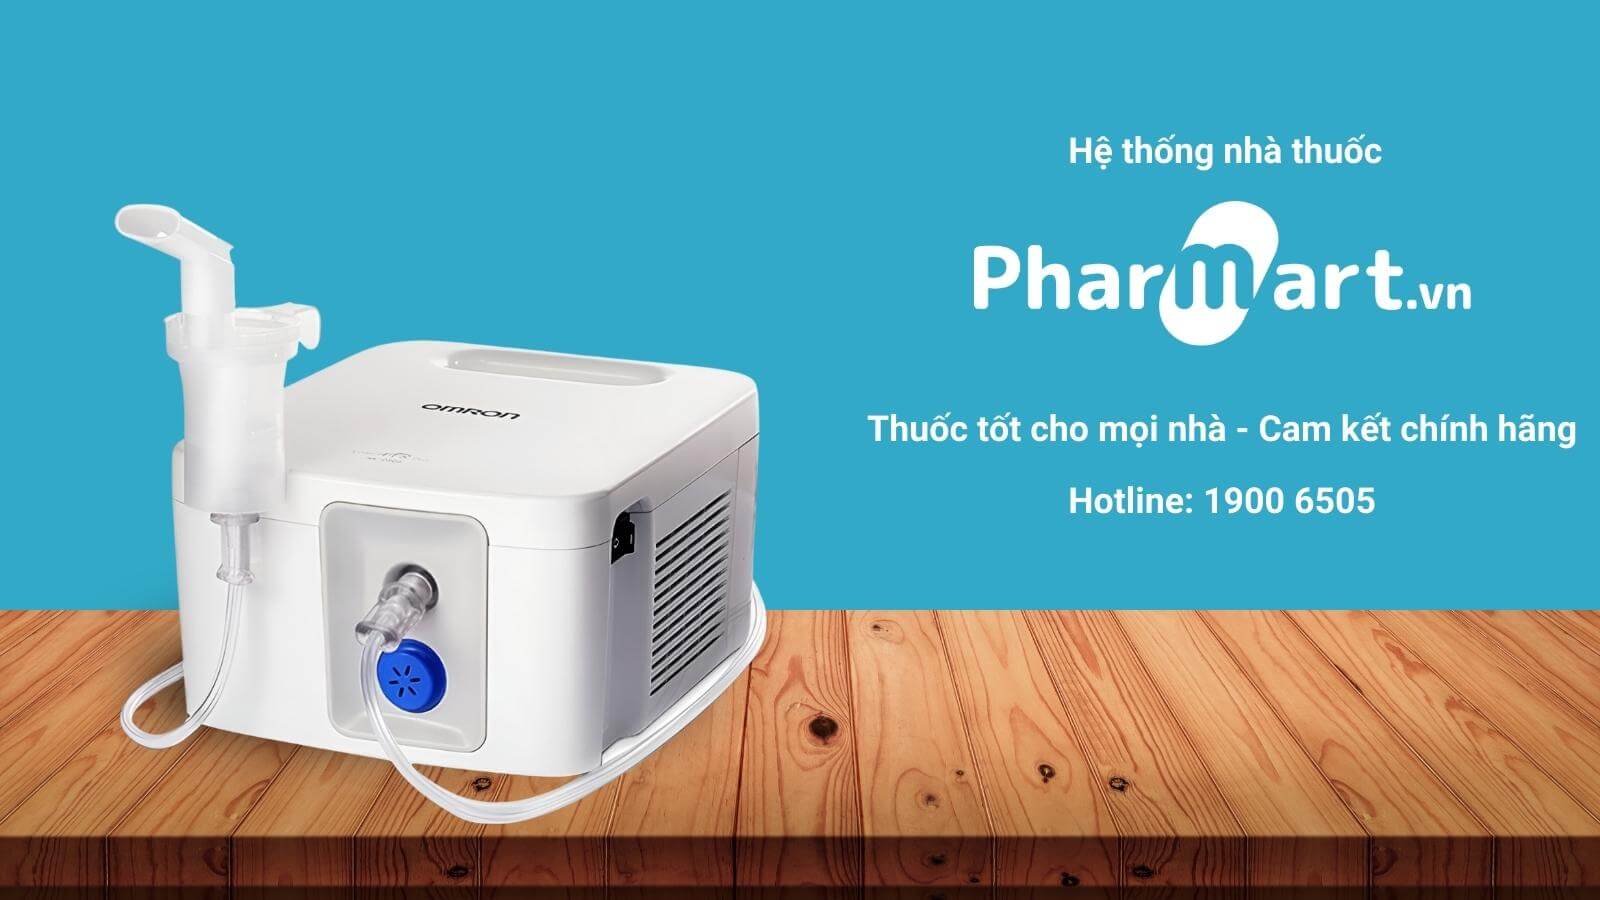 Pharmart.vn cung cấp máy xông Omron C900 chính hãng